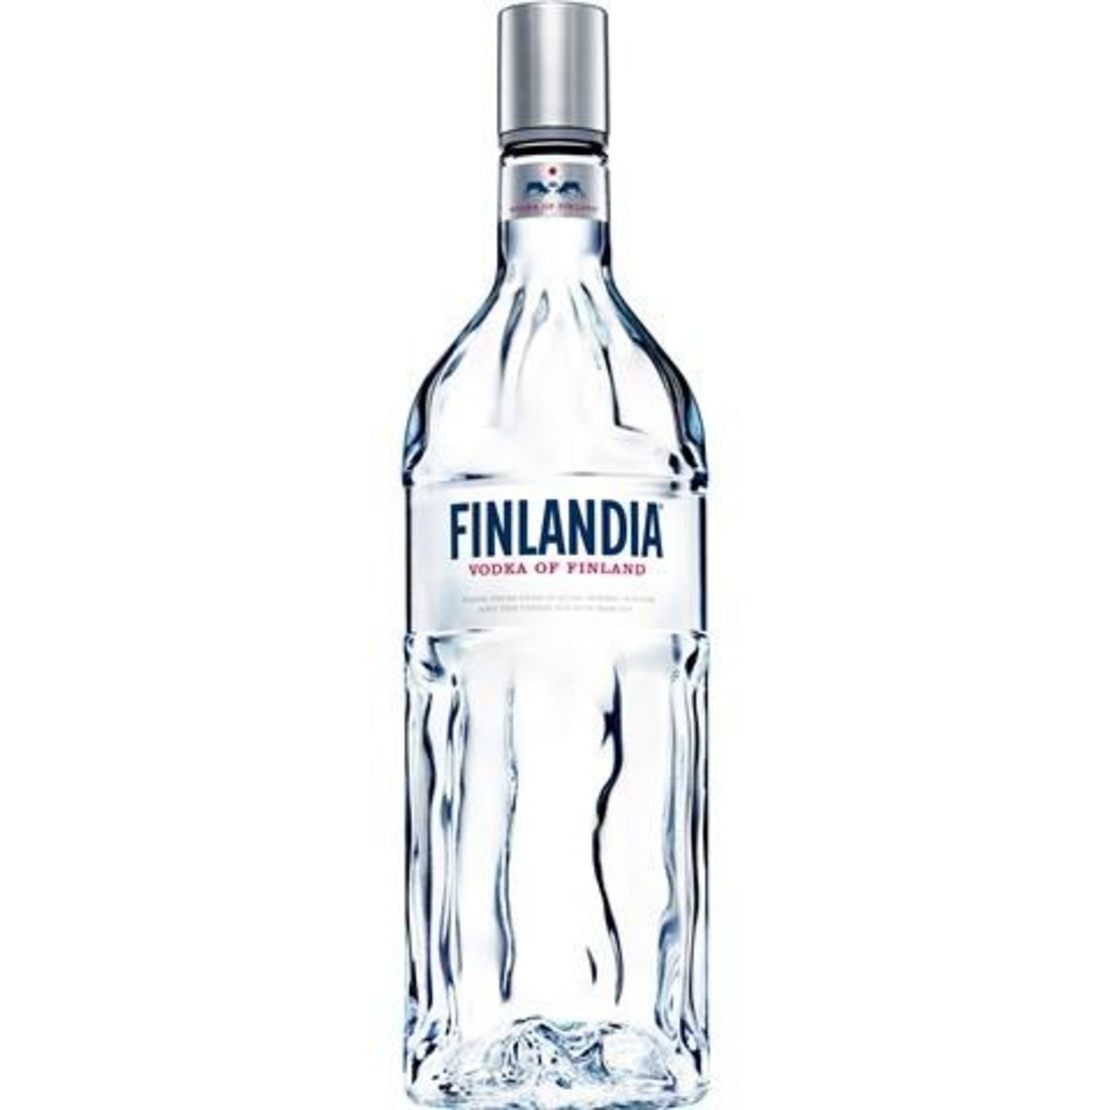 Finlandia - Vodka of Finland 1L